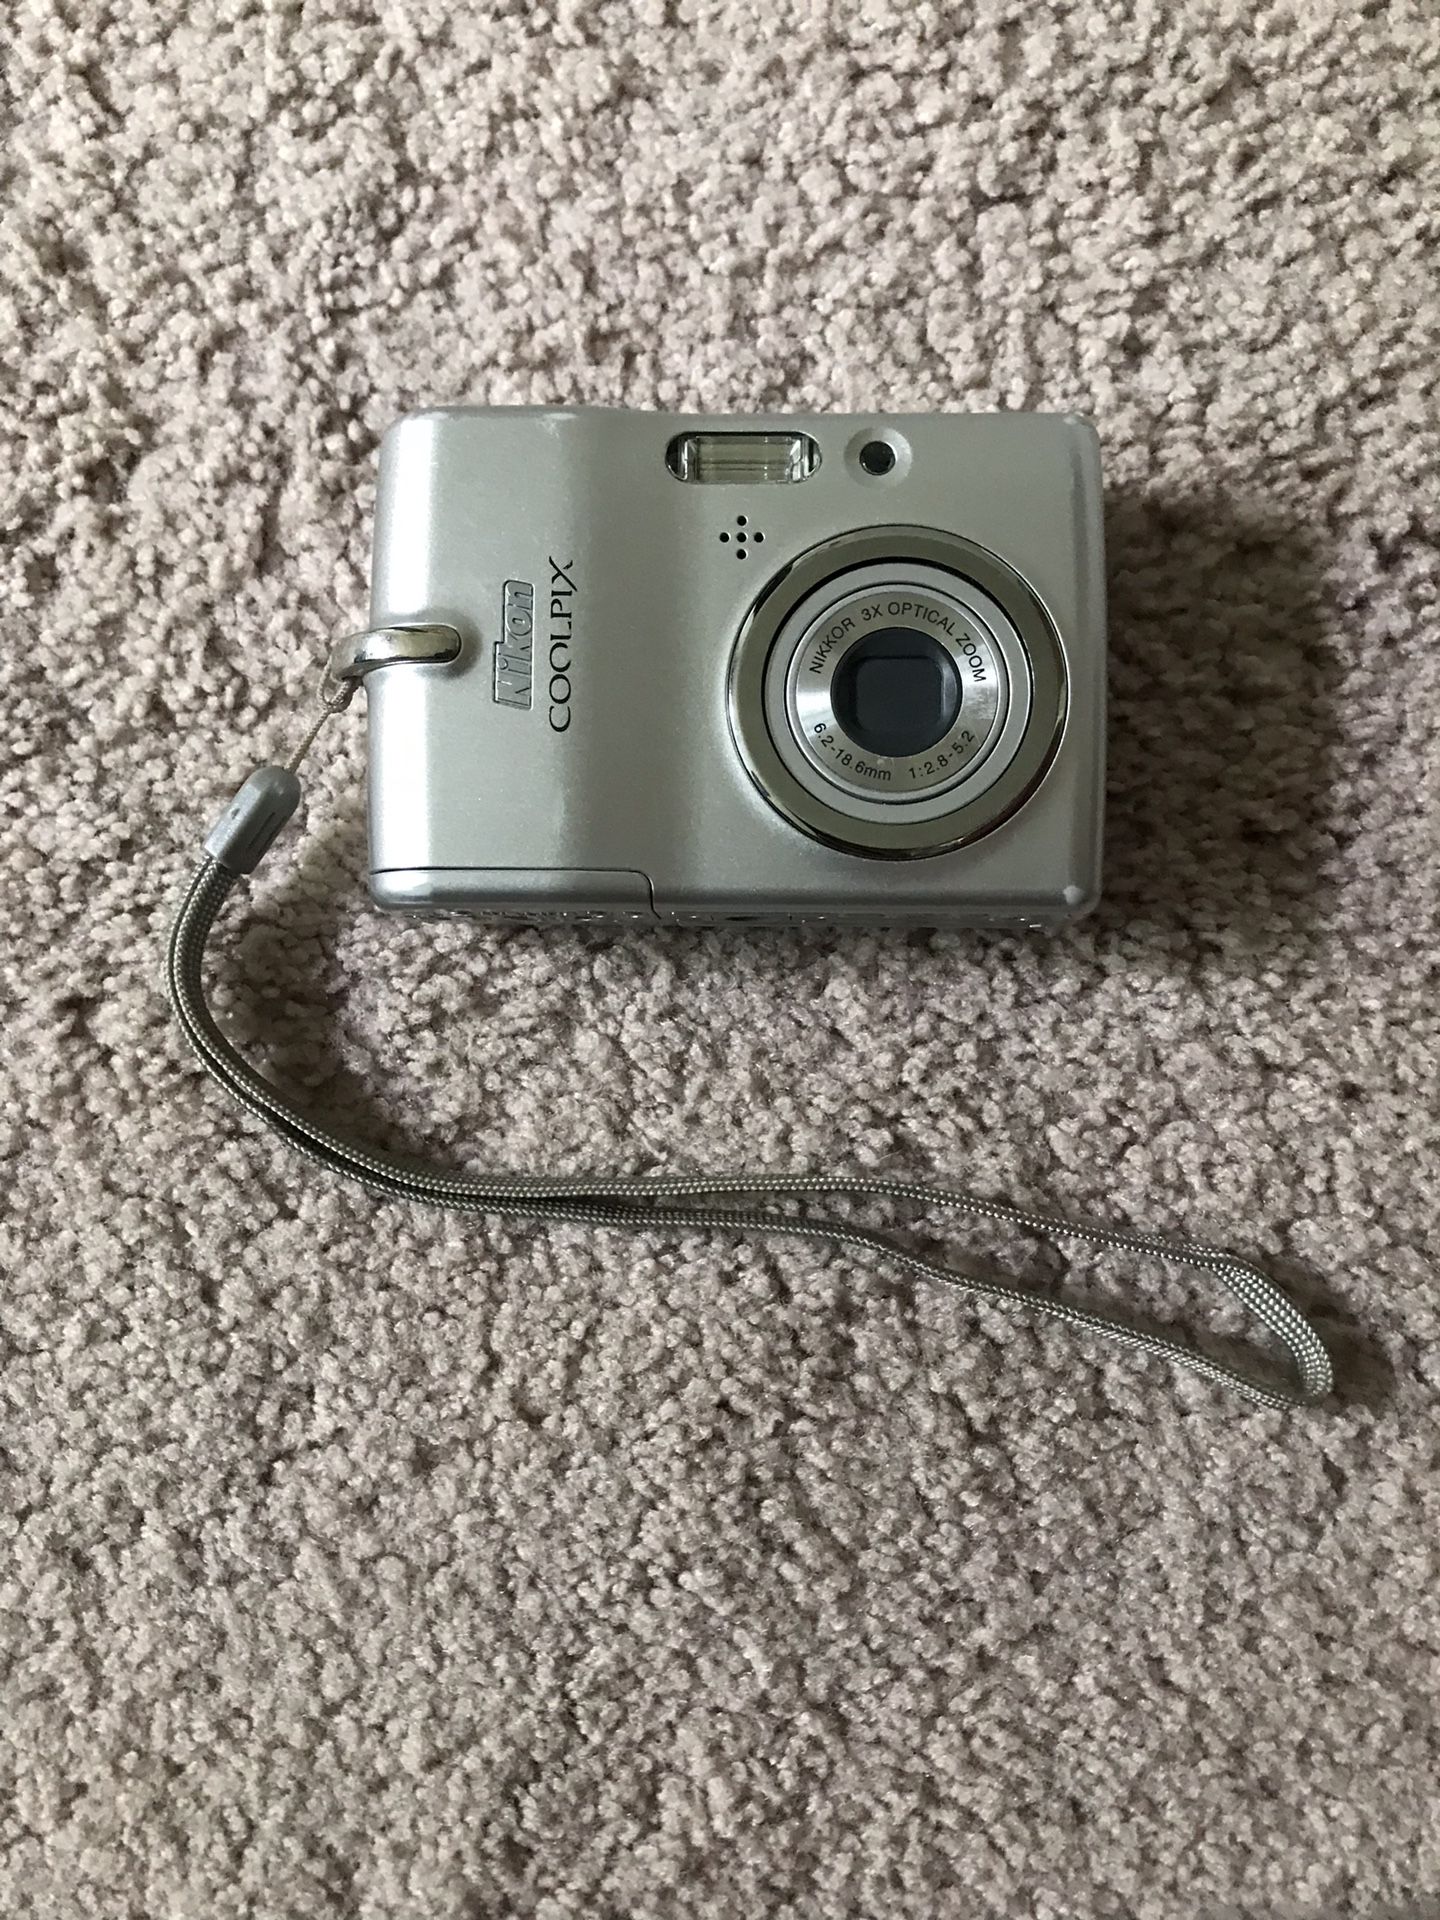 Nikon CoolPix L10 5mp camera